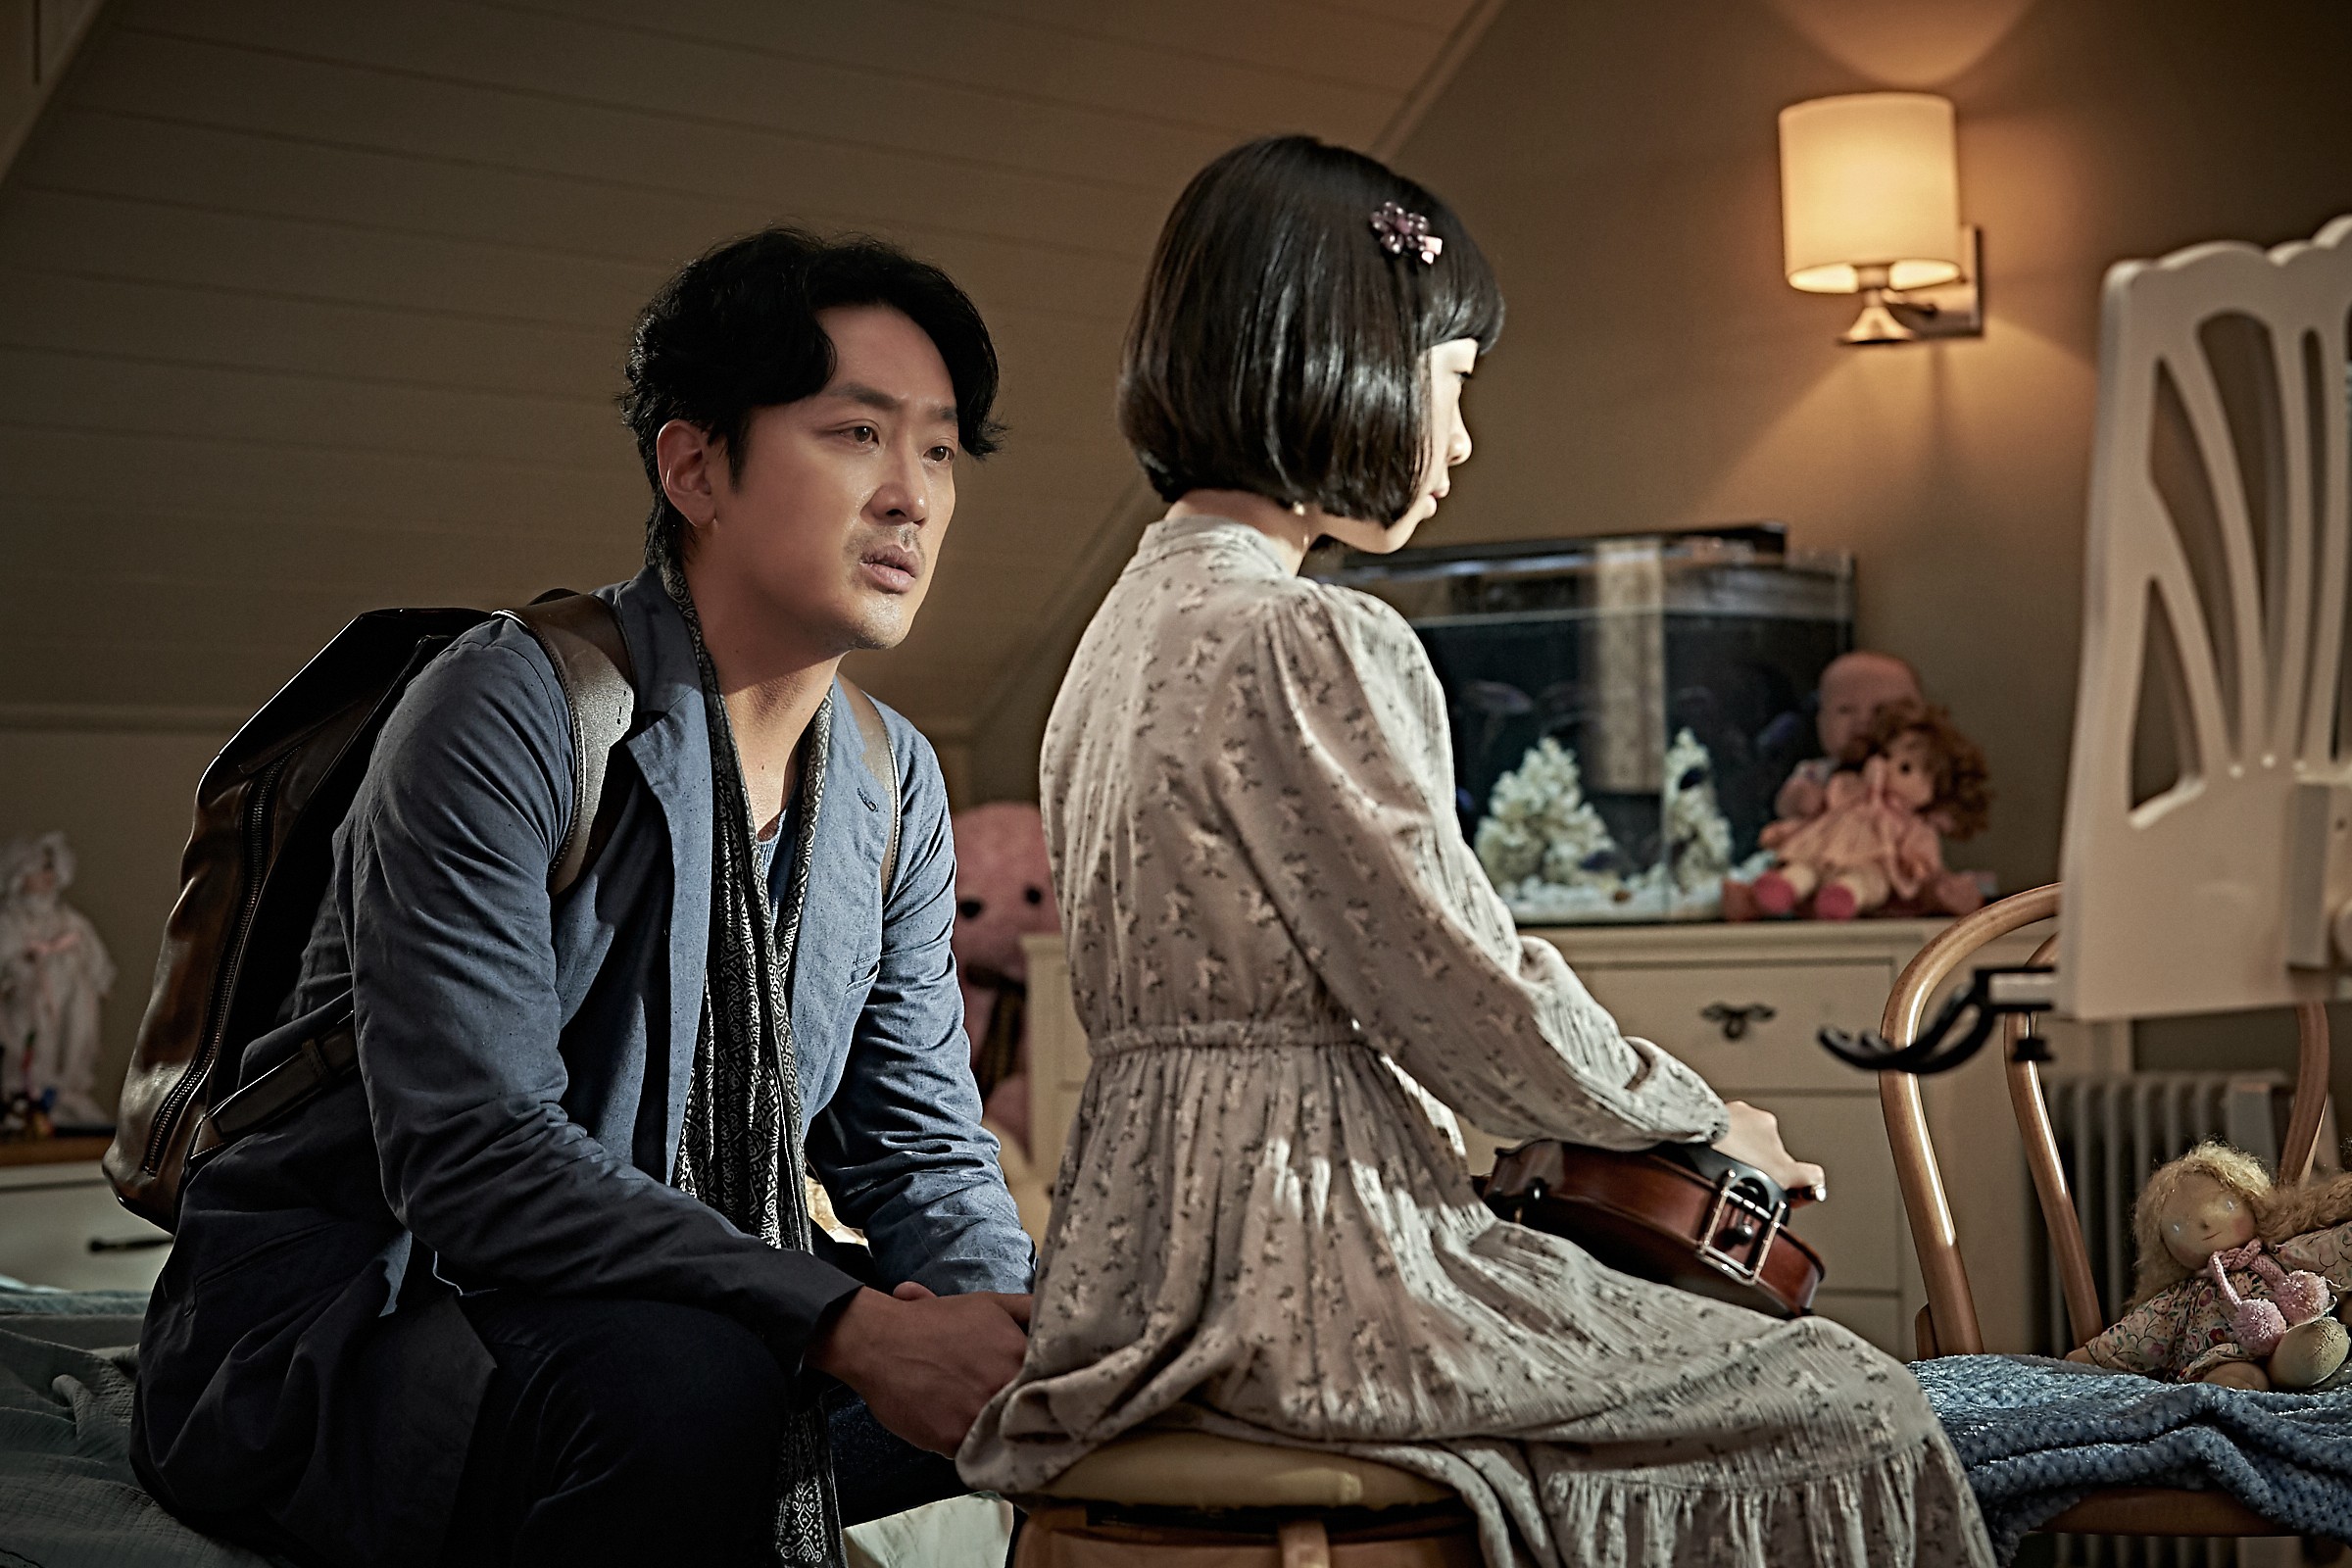 Bikin Deg Degan Inilah 6 Rekomendasi Film Horor Korea Terseram